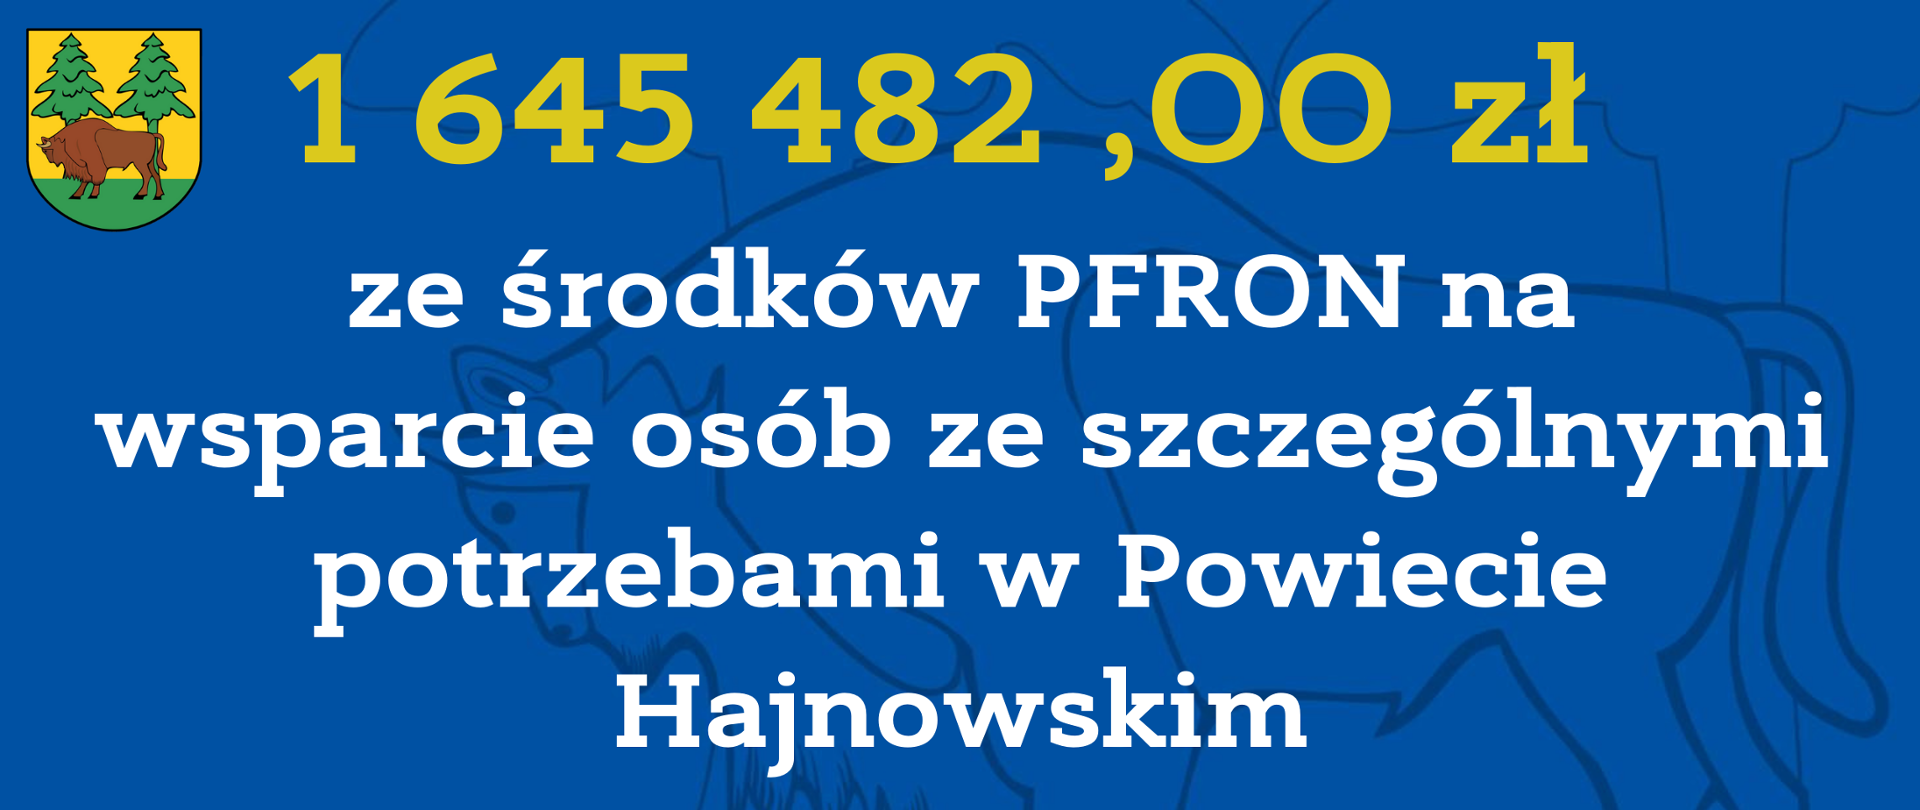 1 645 482,00 zł ze środków PFRON na wsparcie osób ze szczególnymi potrzebami w Powiecie Hajnowskim